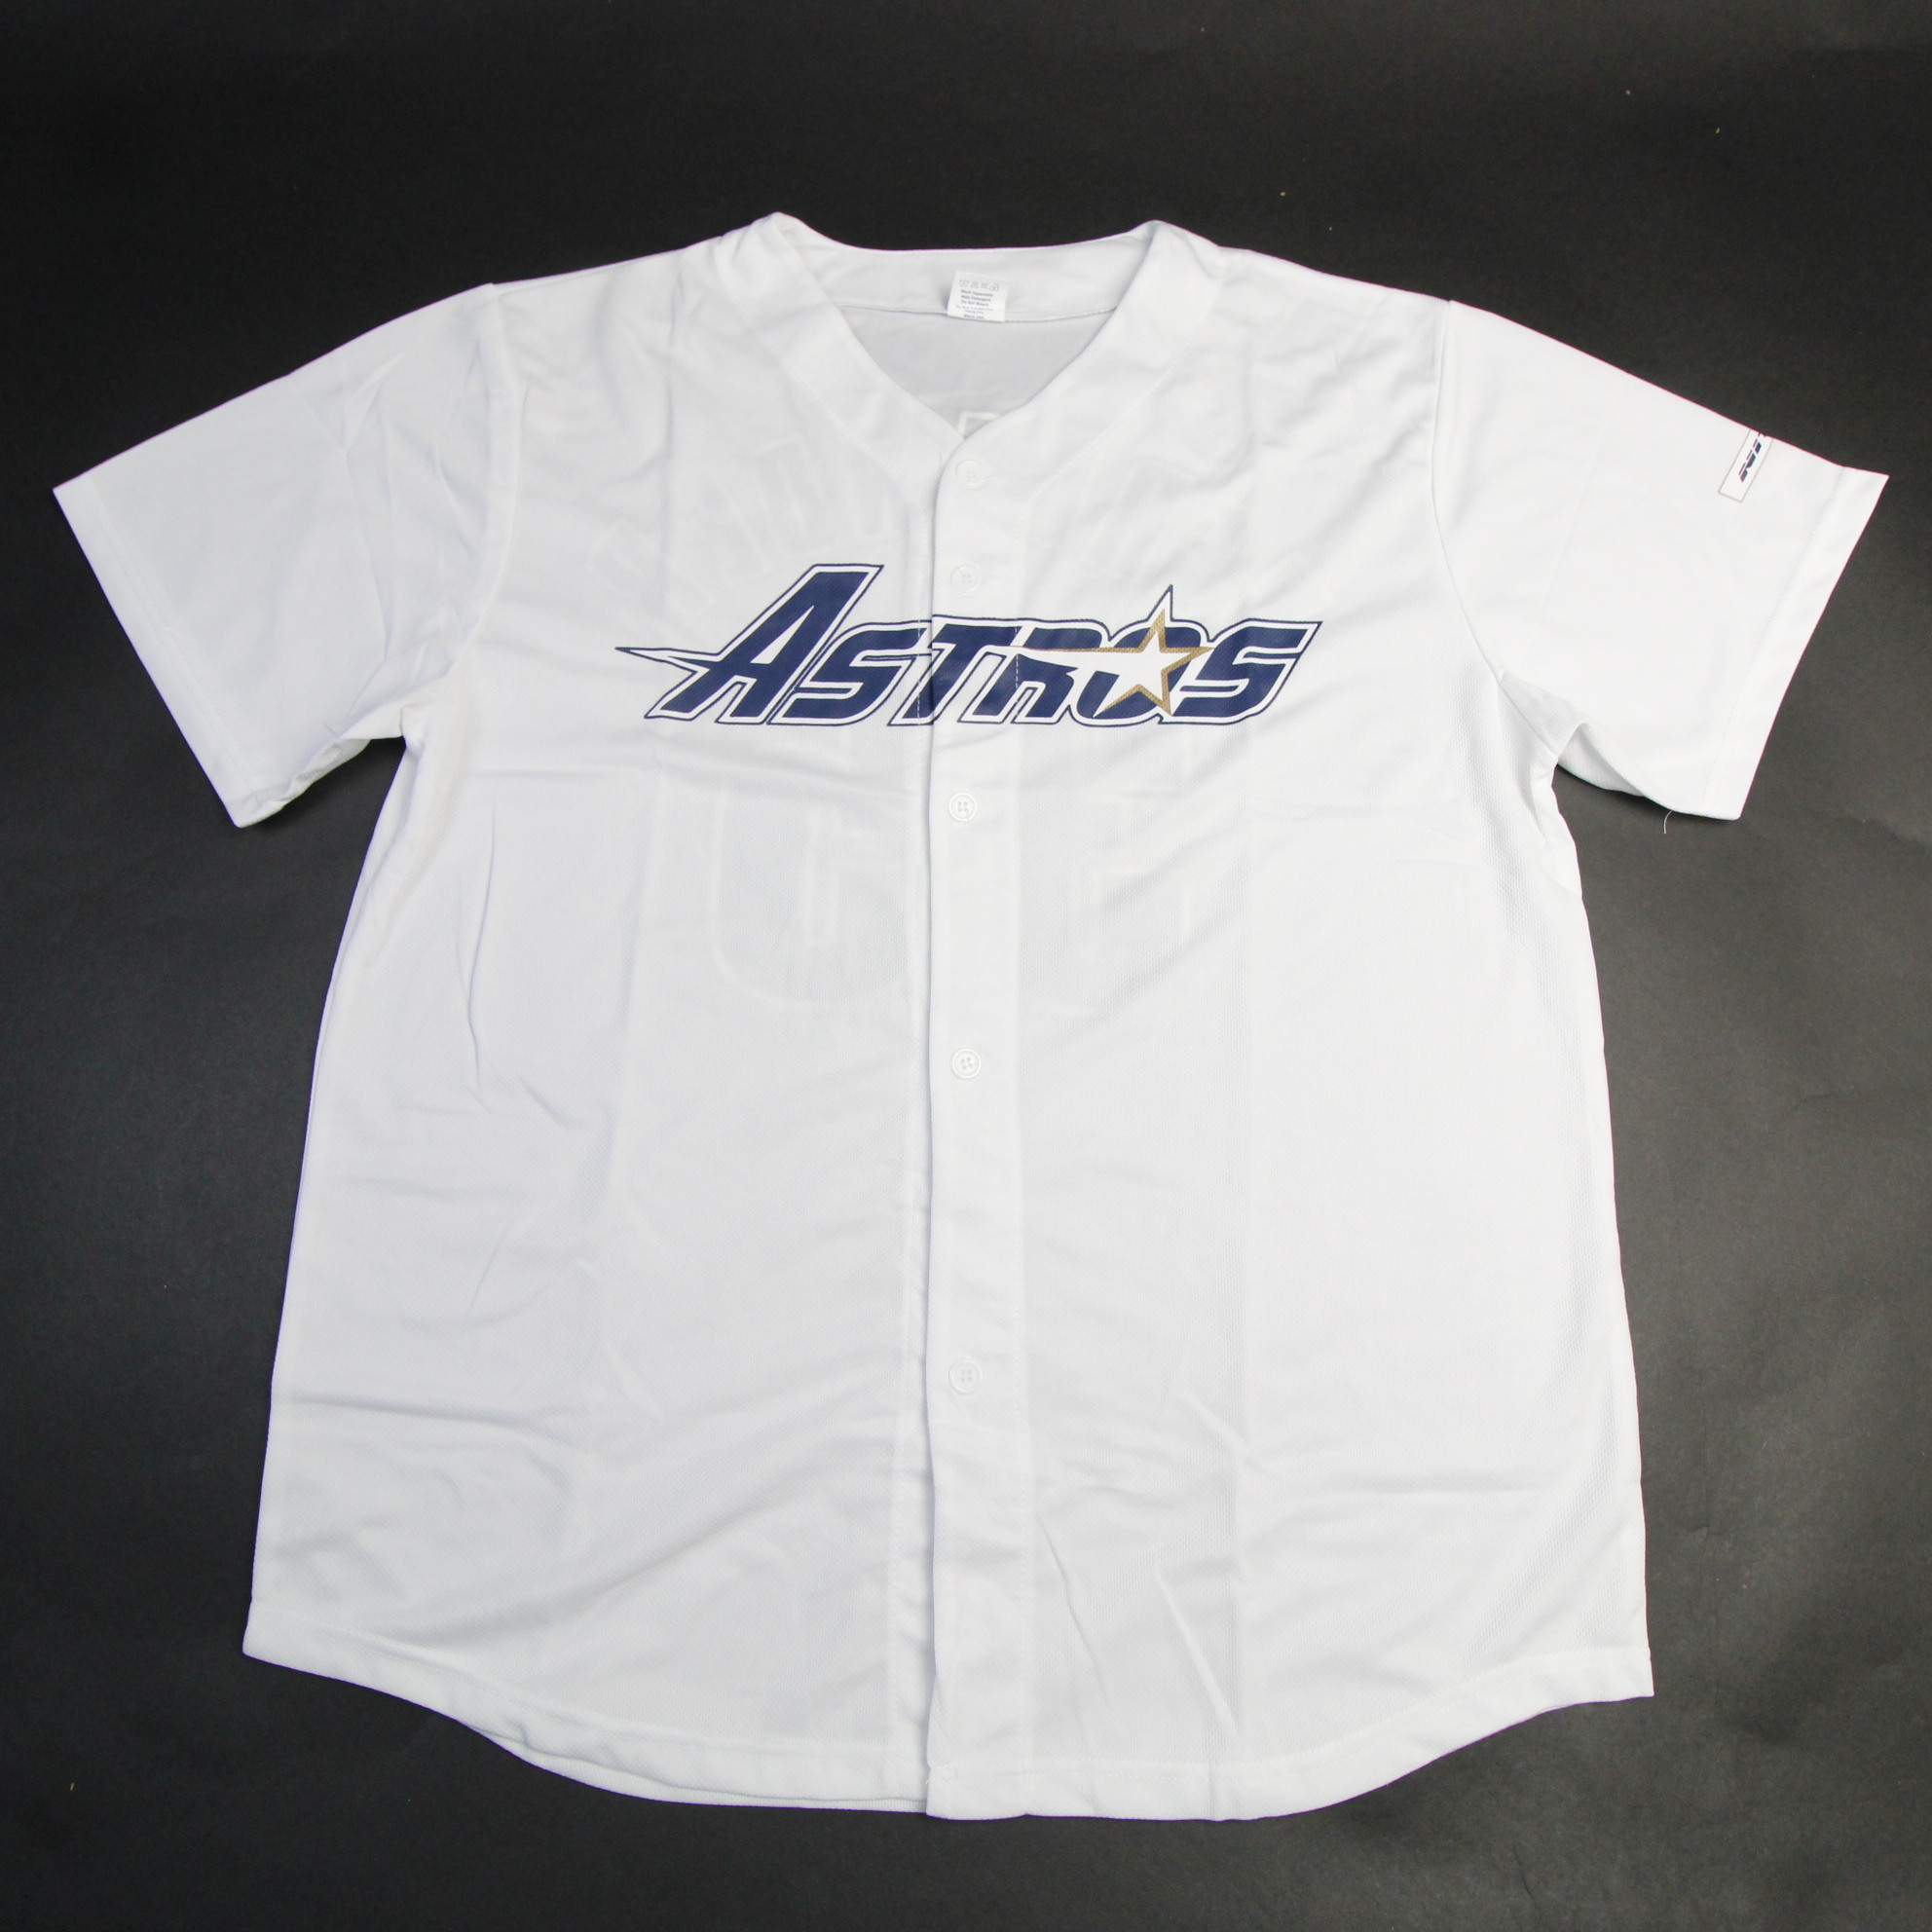 Houston Astros Unbranded Game Jersey - Baseball Men's White